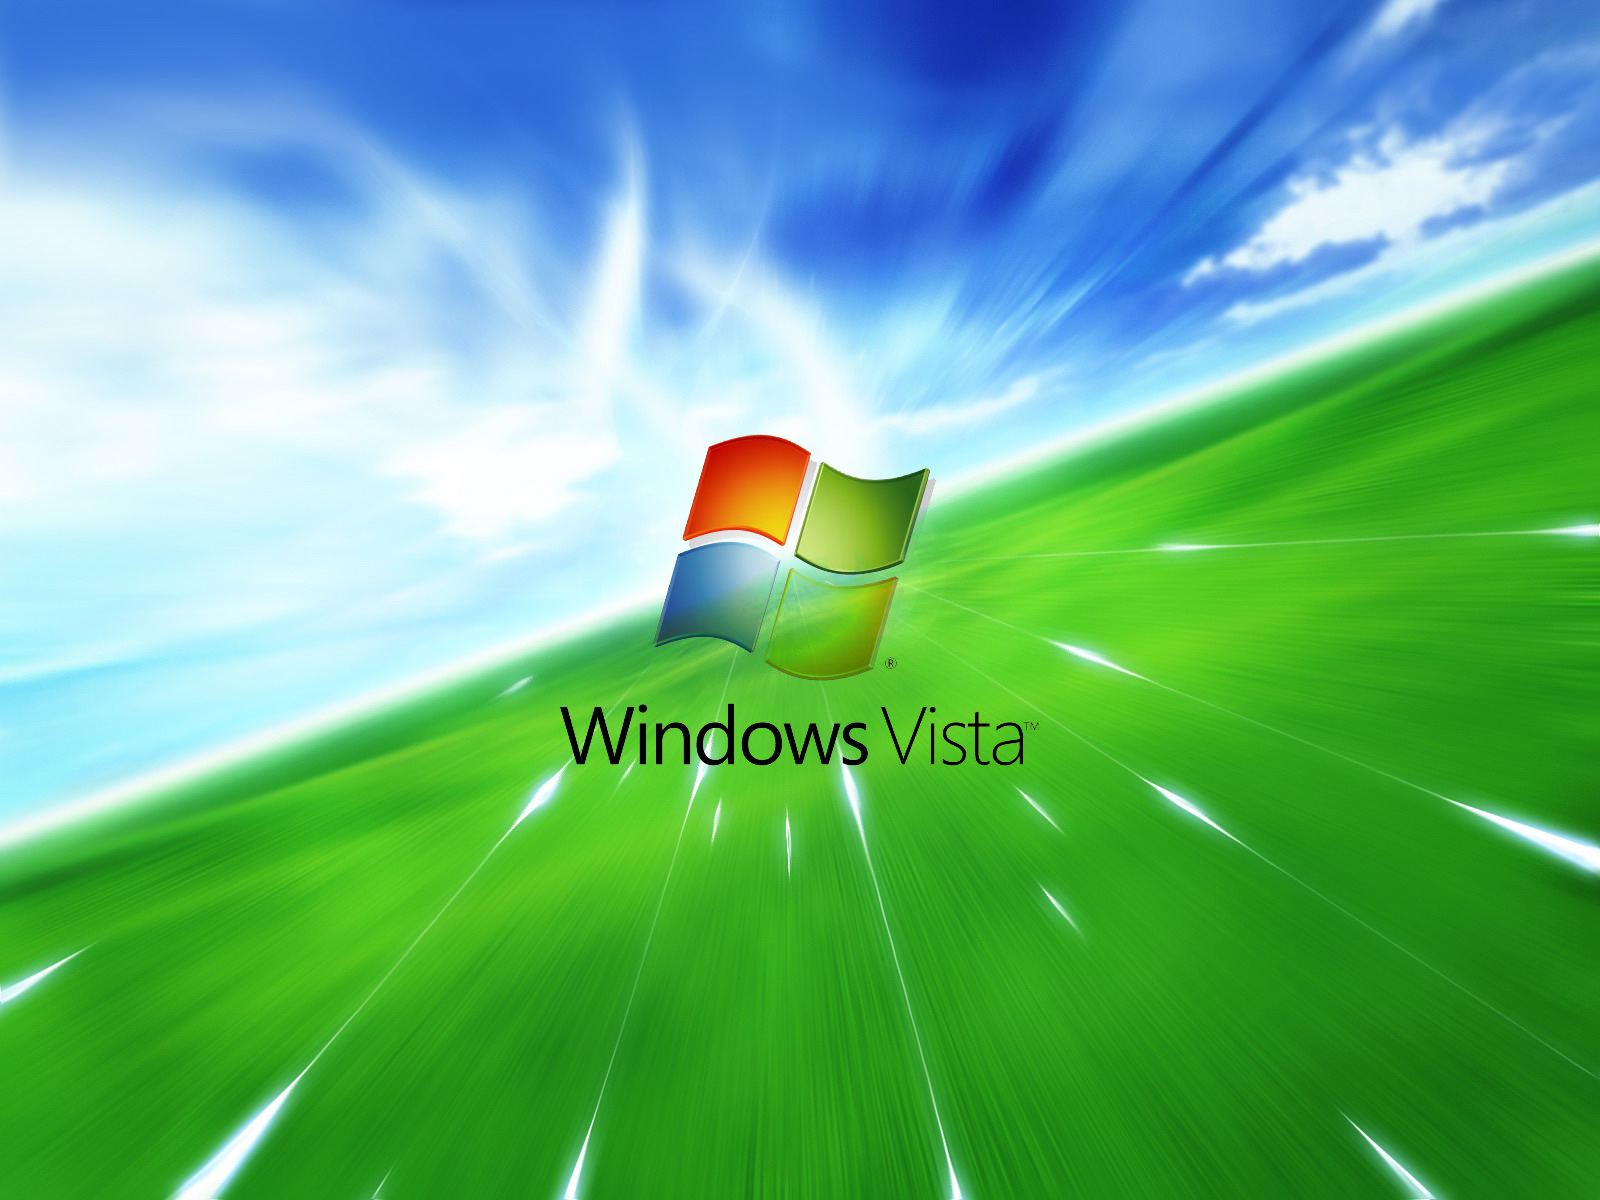 Hình nền Windows XP cũ: Cùng chuyển về những năm tháng đầu tiên sử dụng Windows với các hình nền đầy kỷ niệm. Phong cảnh và hiệu ứng đẹp mắt sẽ khiến bạn đắm chìm trong ký ức tuổi thơ. Hãy sử dụng các bức ảnh này để mang lại sự cổ điển và đặc biệt cho máy tính của bạn.